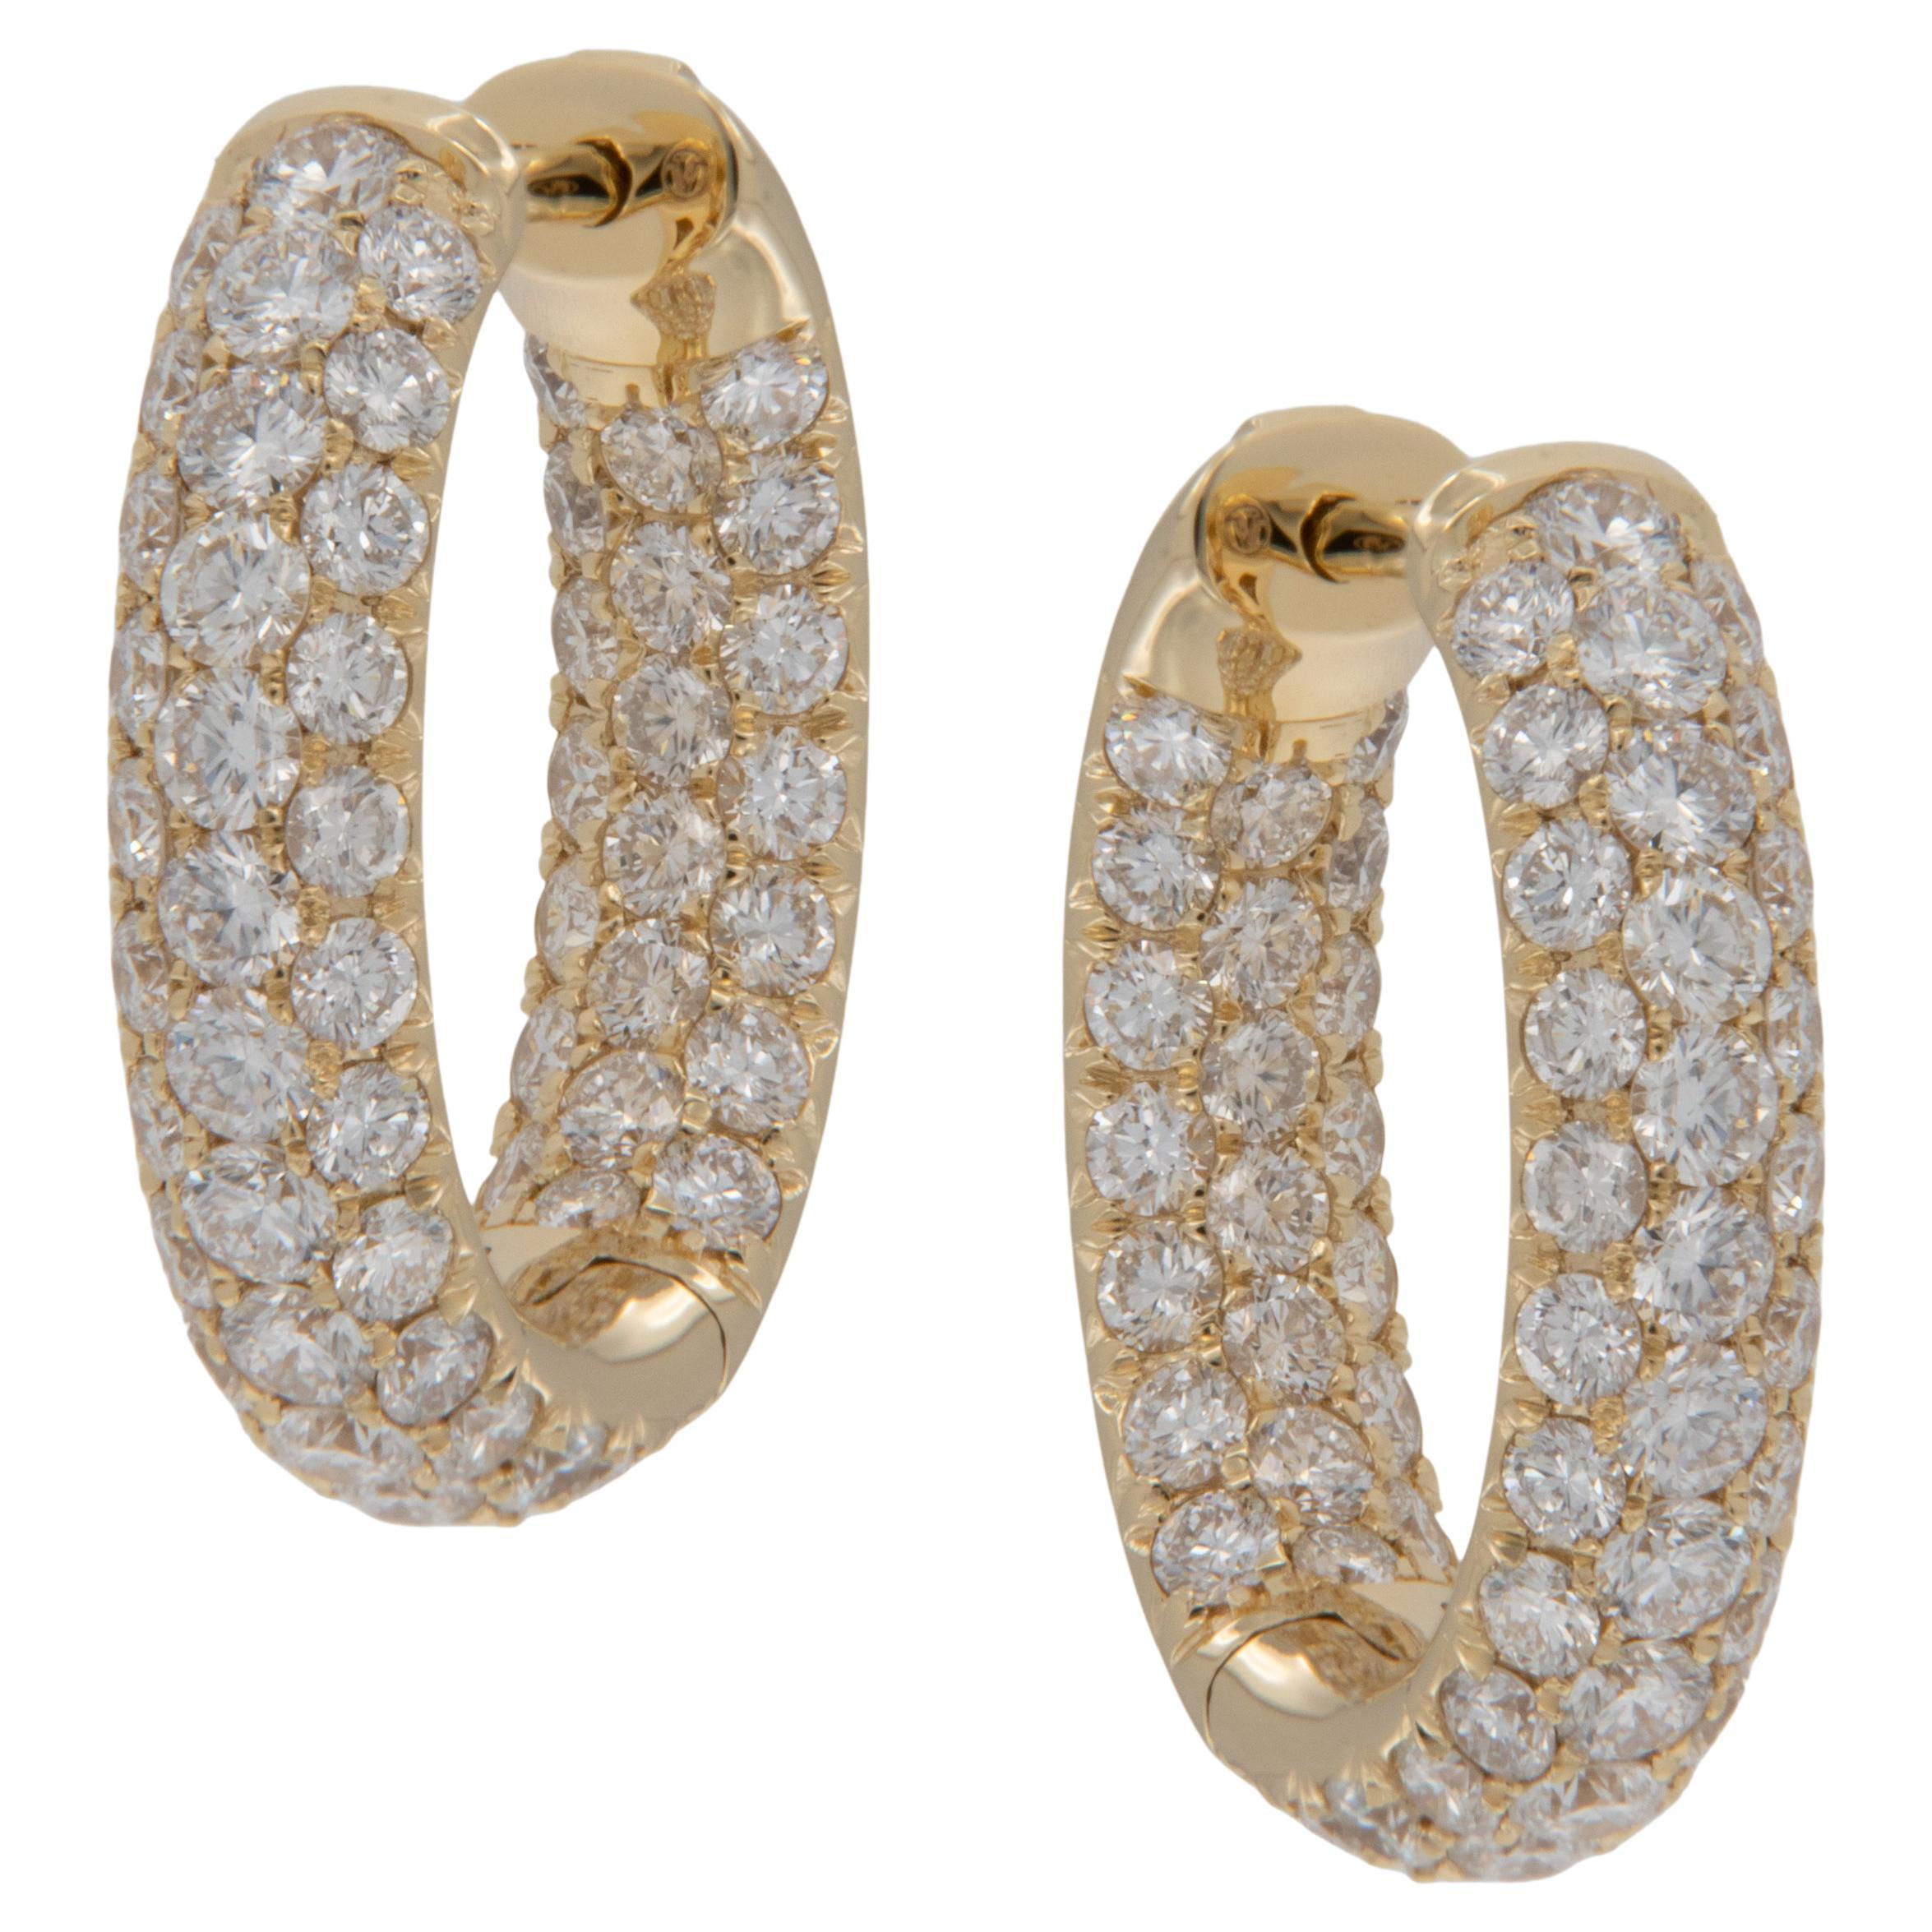 18 Karat Yellow Gold Oval Shape Inside Outside 3.05 Cttw Diamond Hoop Earrings 